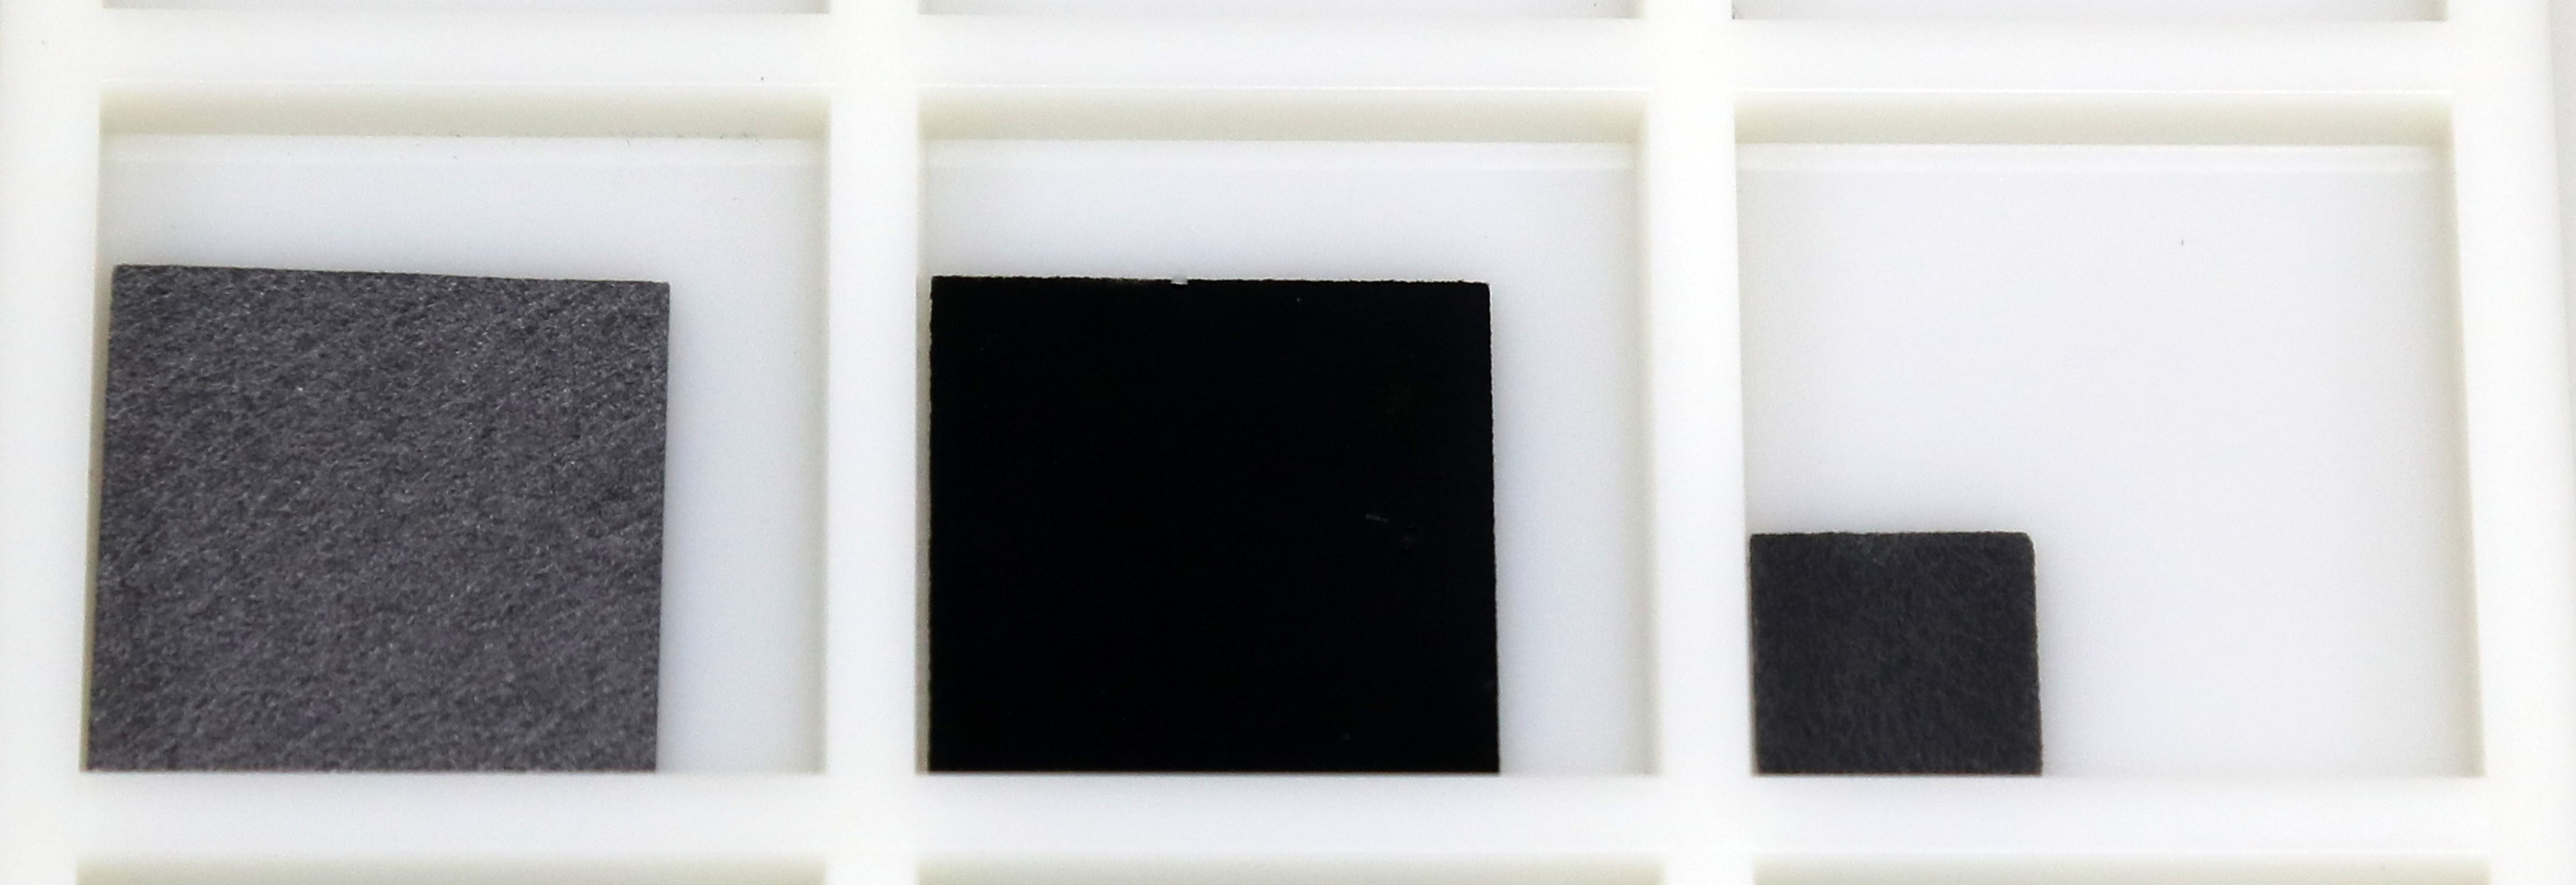 写真左が、炭素繊維を貼り合わせて作られる「カーボンペーパー」の試料片。真ん中の写真が「（仮称）マリモカーボンシート」だ。これは「カーボンペーパー」を形作る繊維にさらに微細な繊維状ナノ炭素を合成させた複合材料で、黒色をしている。大きさ は2センチメートル角。写真右側は、試験的に「（仮称）マリモカーボンシート」にパラジウムを固定化（担持）した試料片